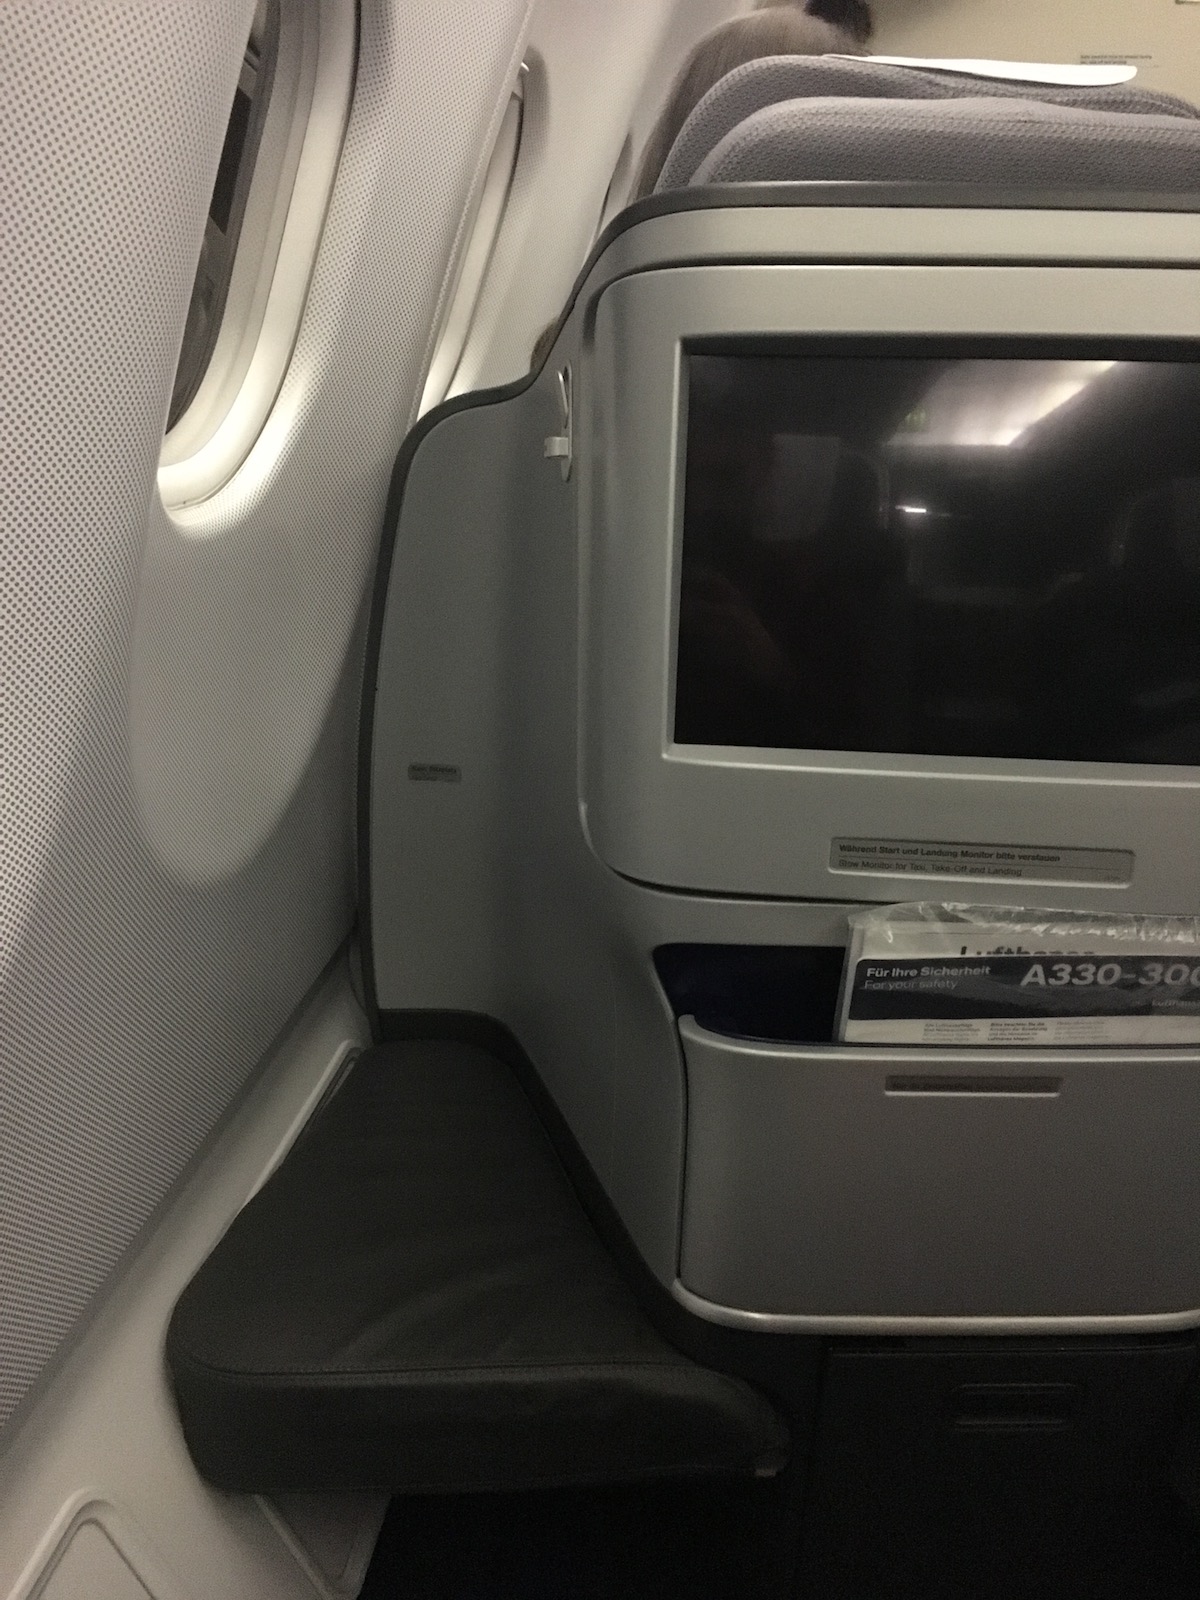 Footrest on Lufthansa business class A330